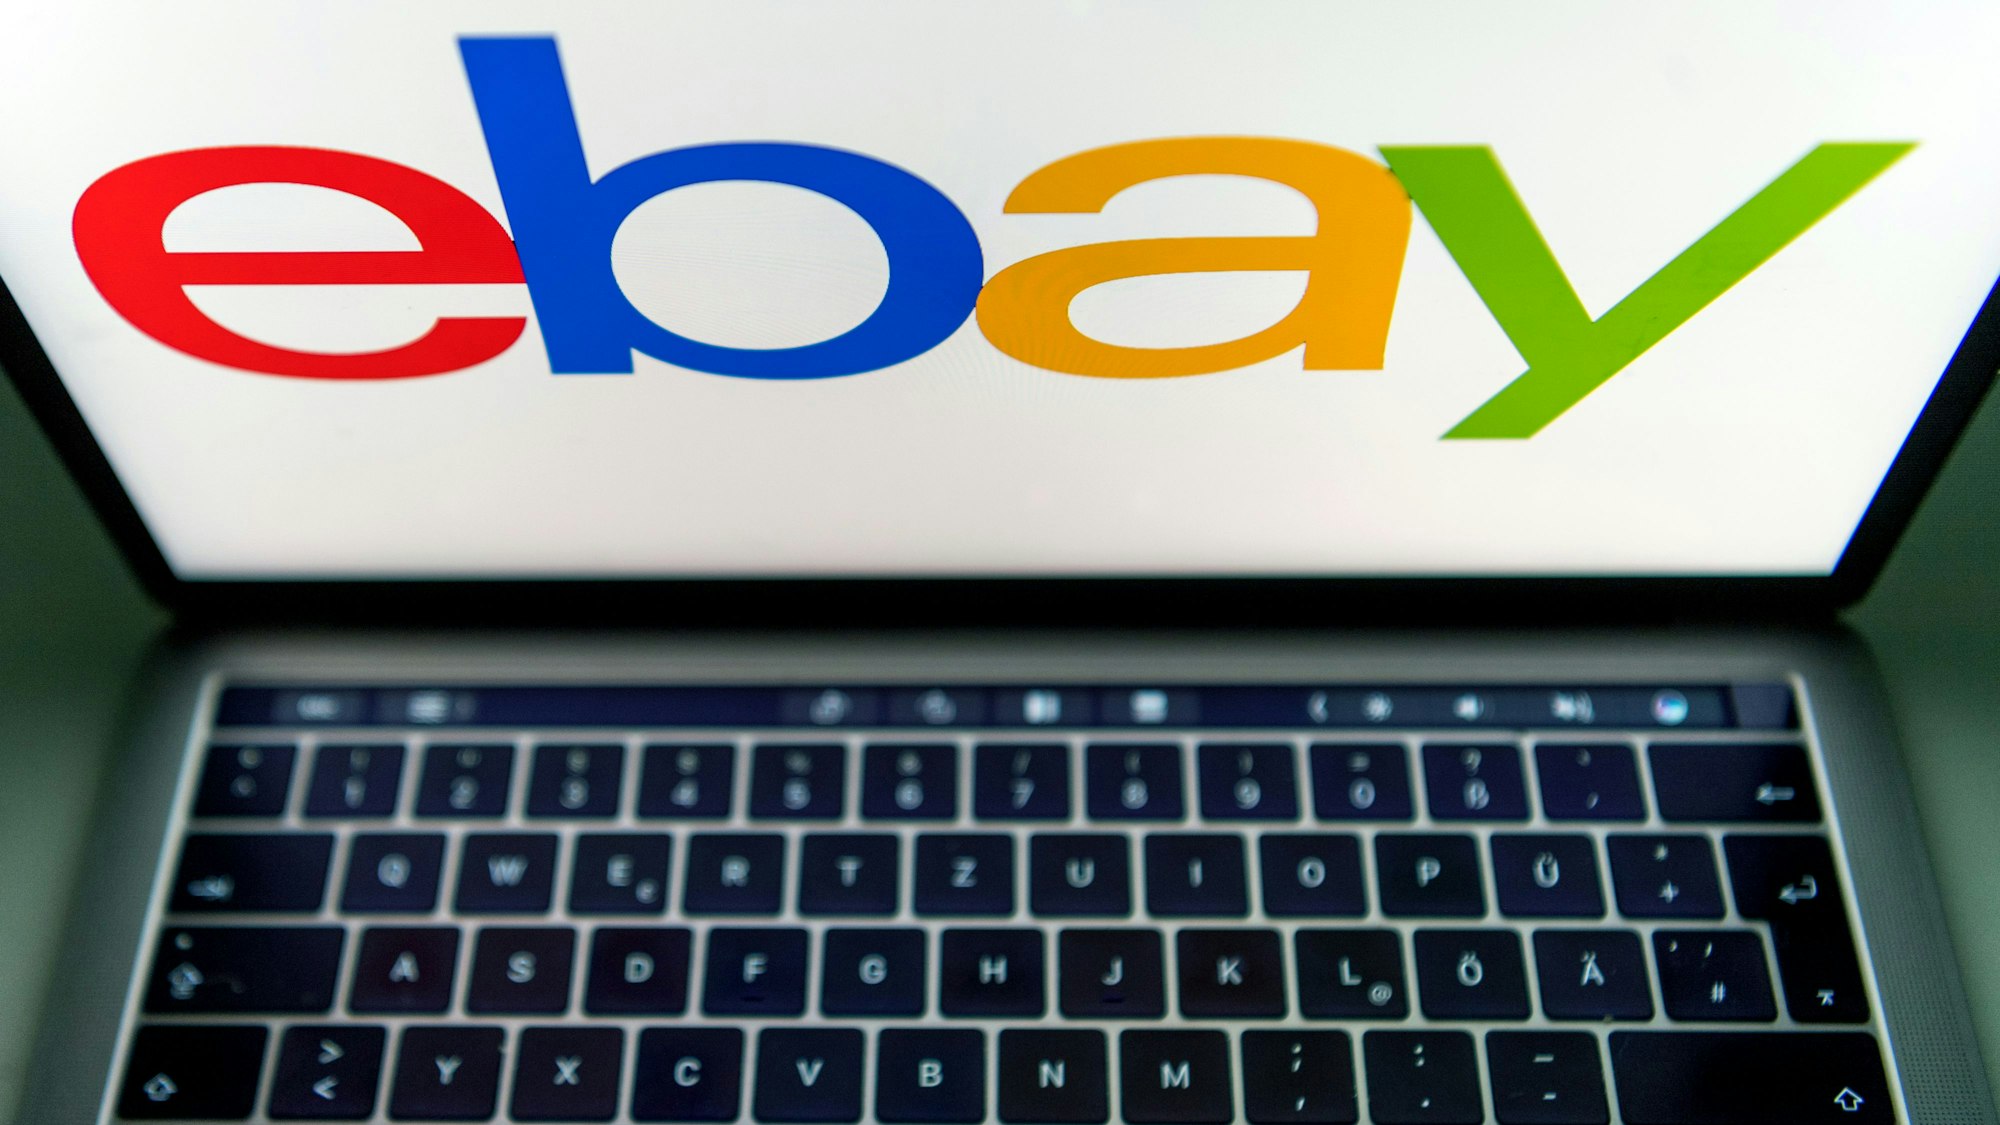 Das Logo von Ebay wird auf dem Display eines Laptops angezeigt.